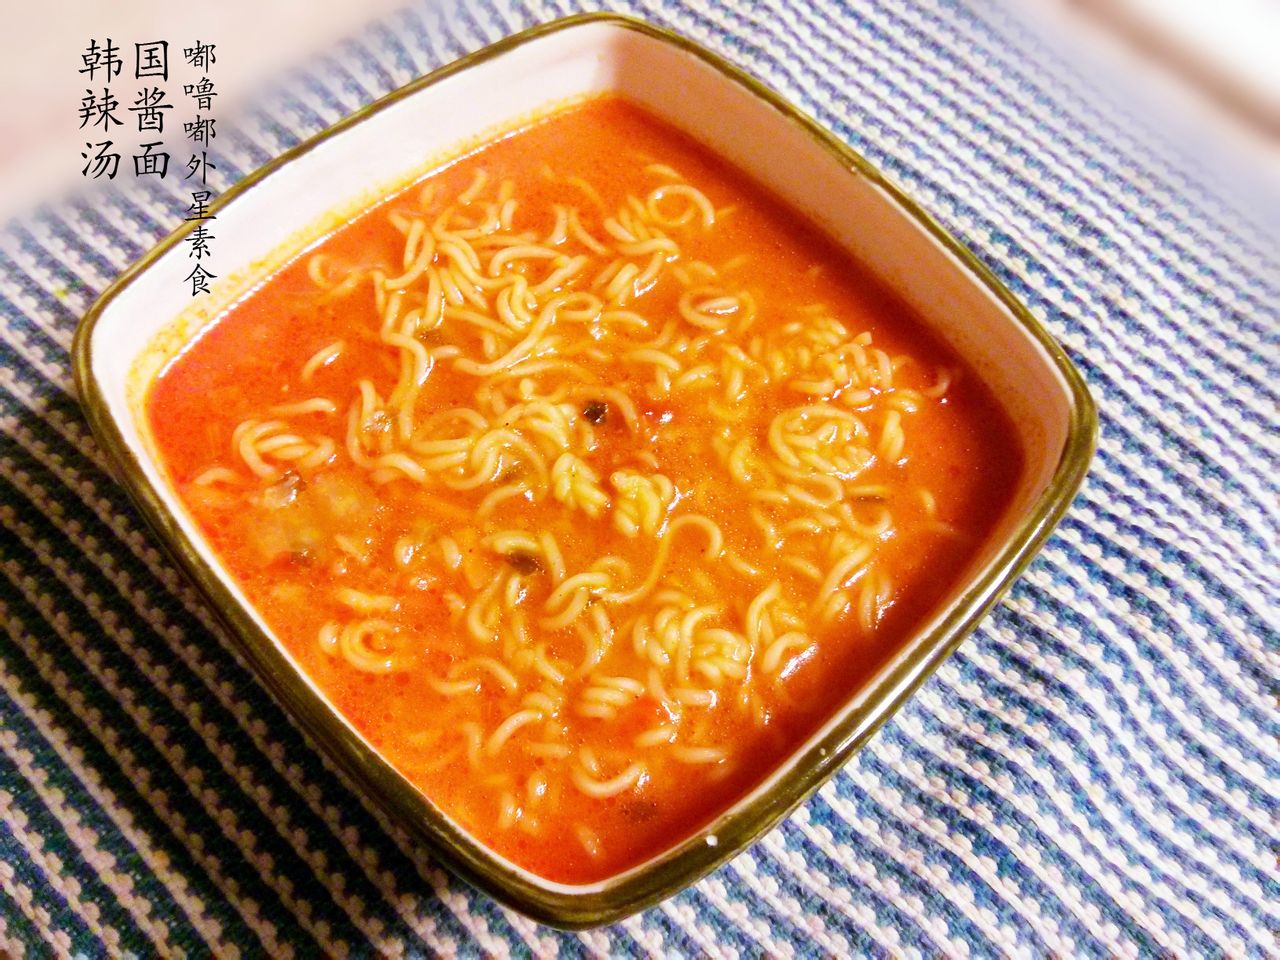 韓國辣醬湯麵